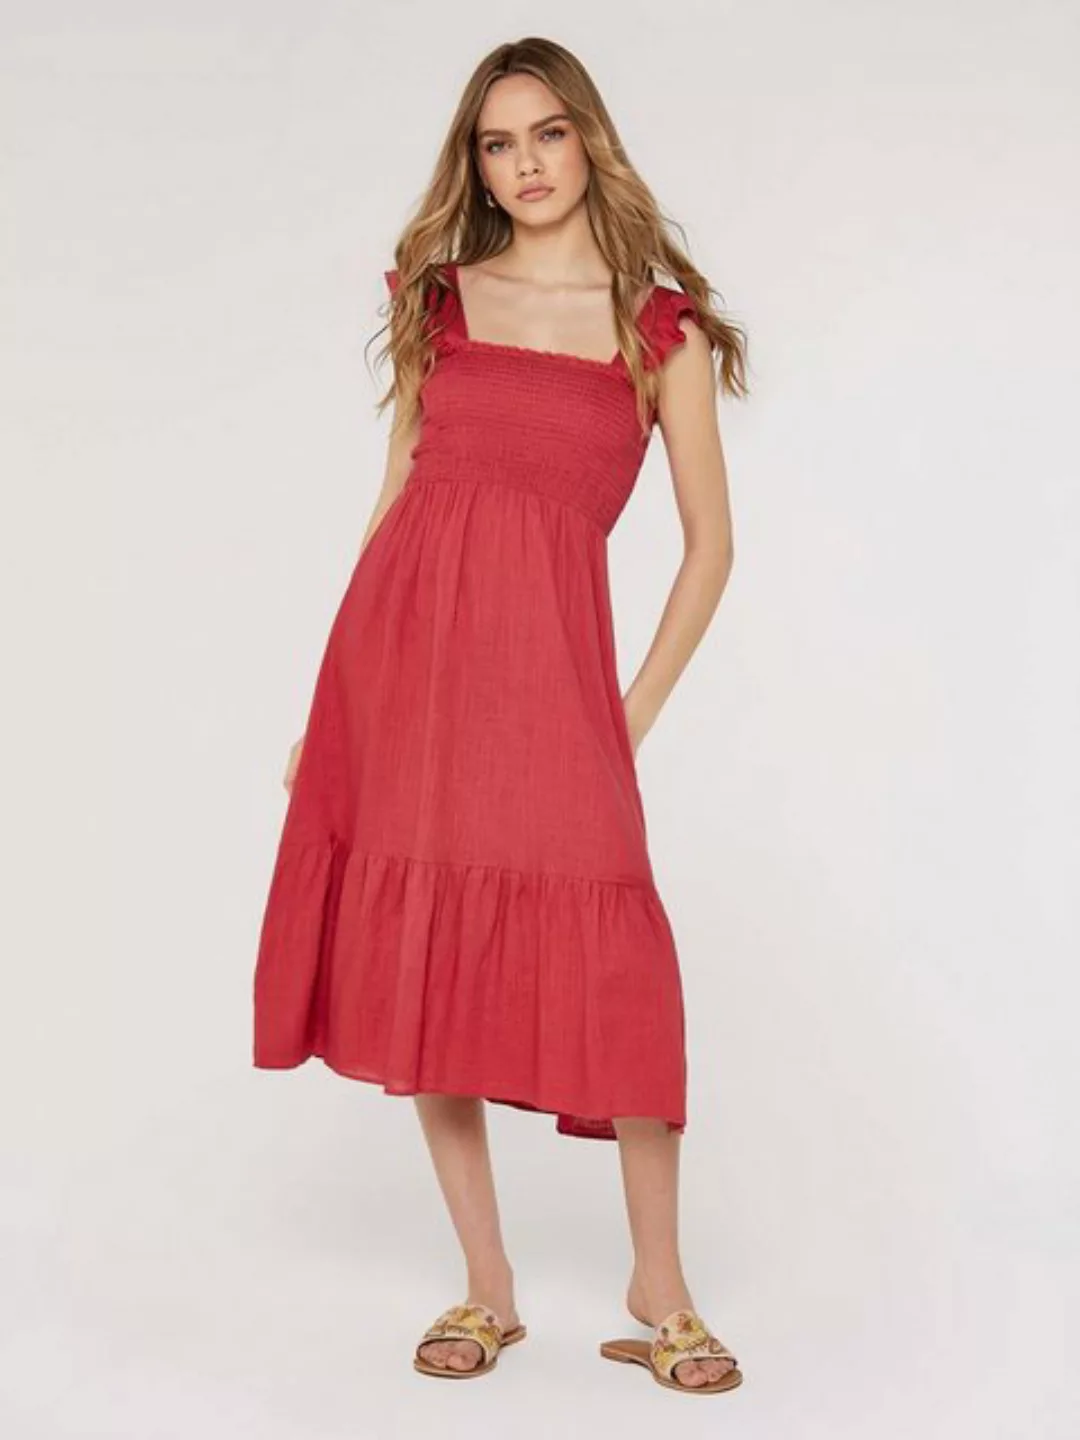 Apricot Sommerkleid in unifarben, gesmokt günstig online kaufen